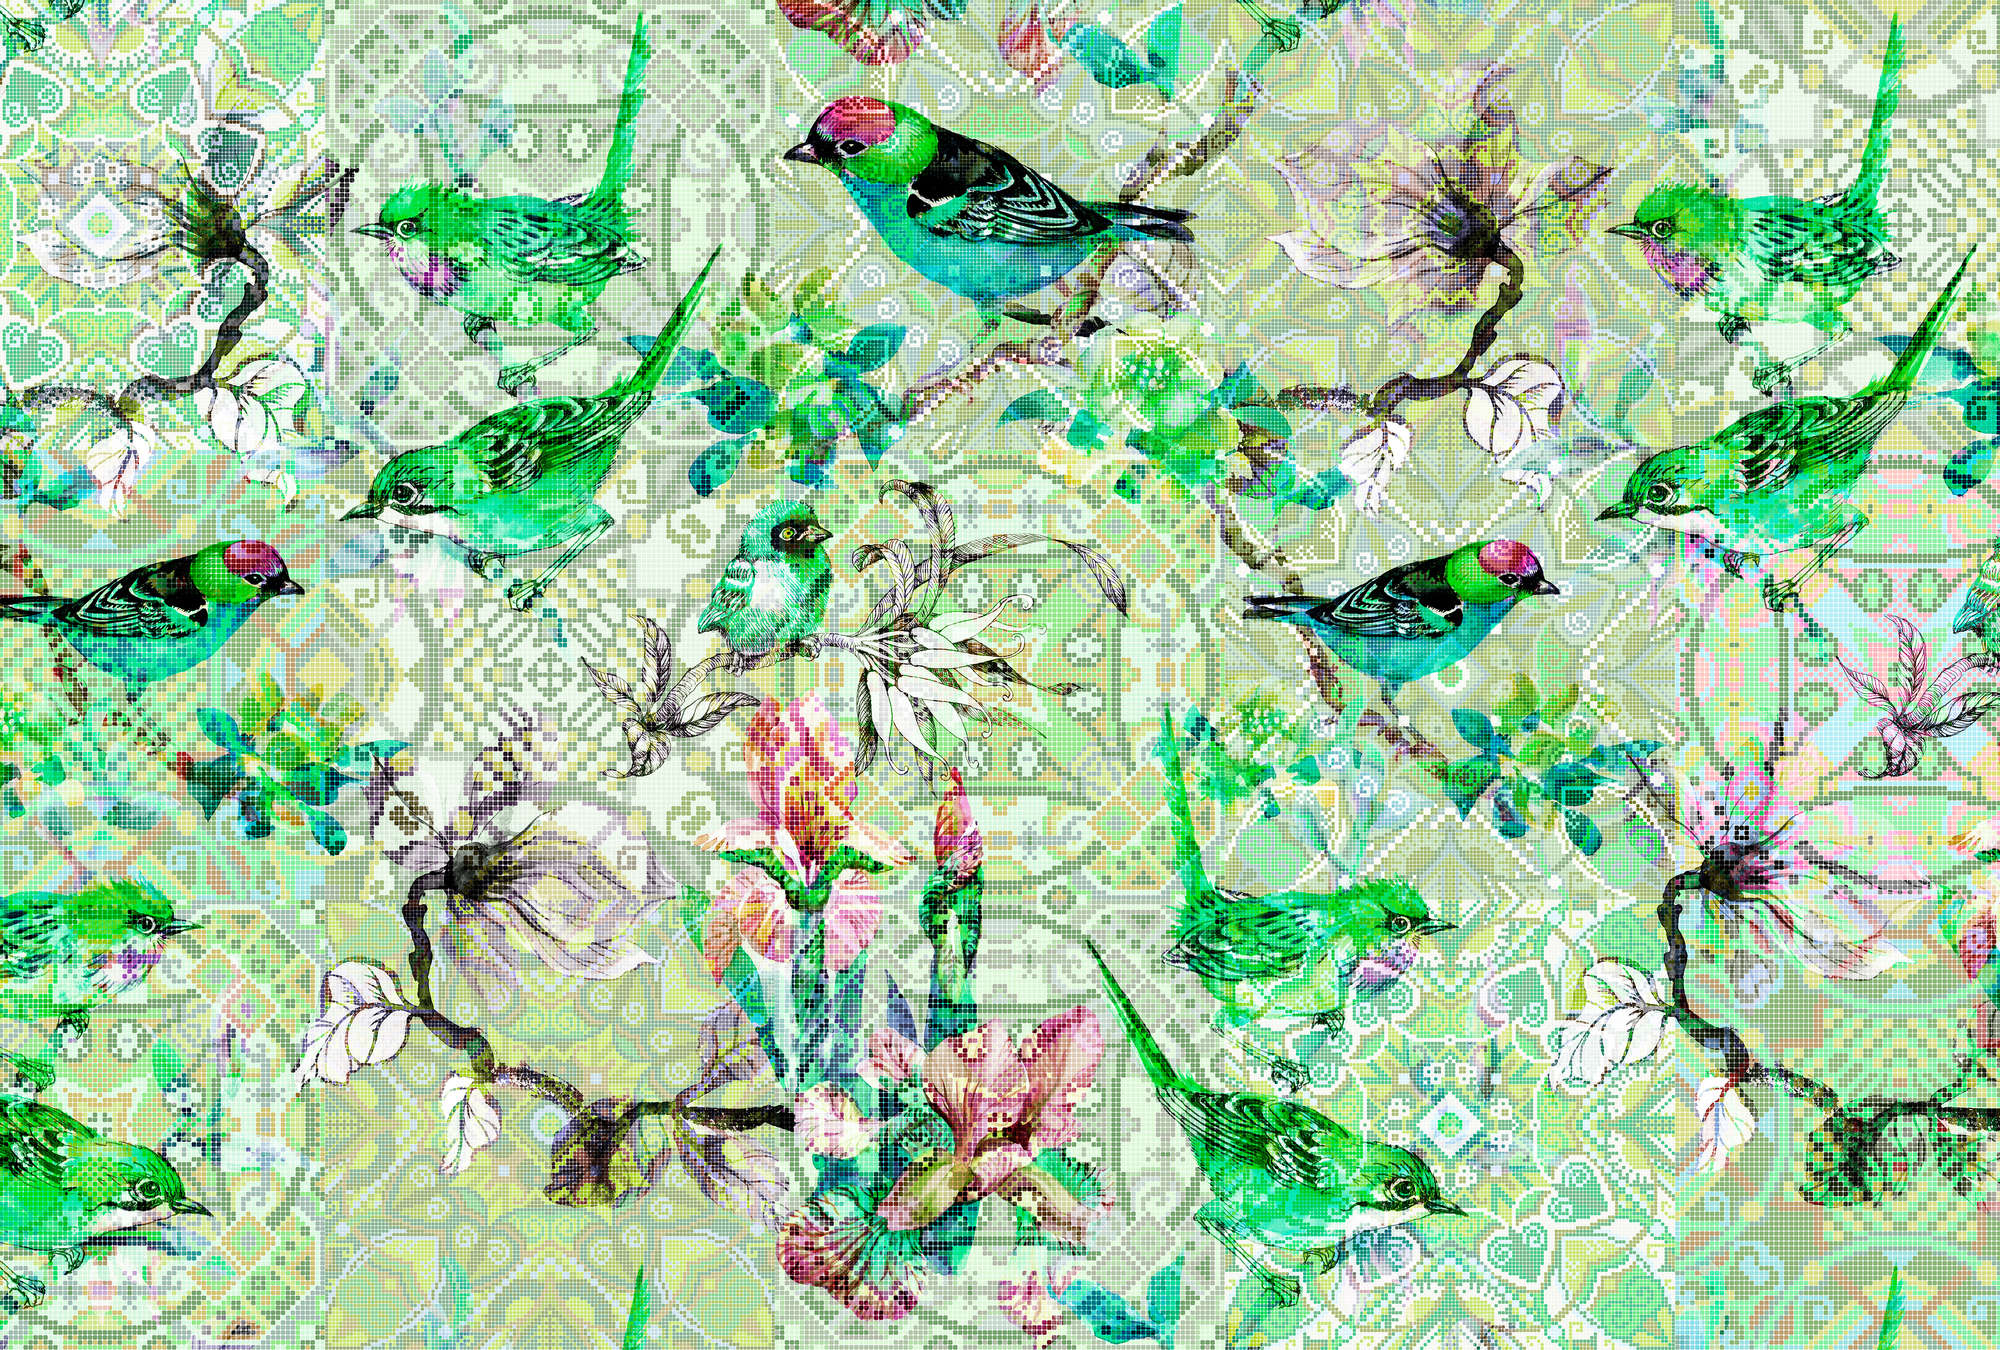             Papel Pintado Pájaro Verde con Diseño de Mosaico - Verde, Rosa
        